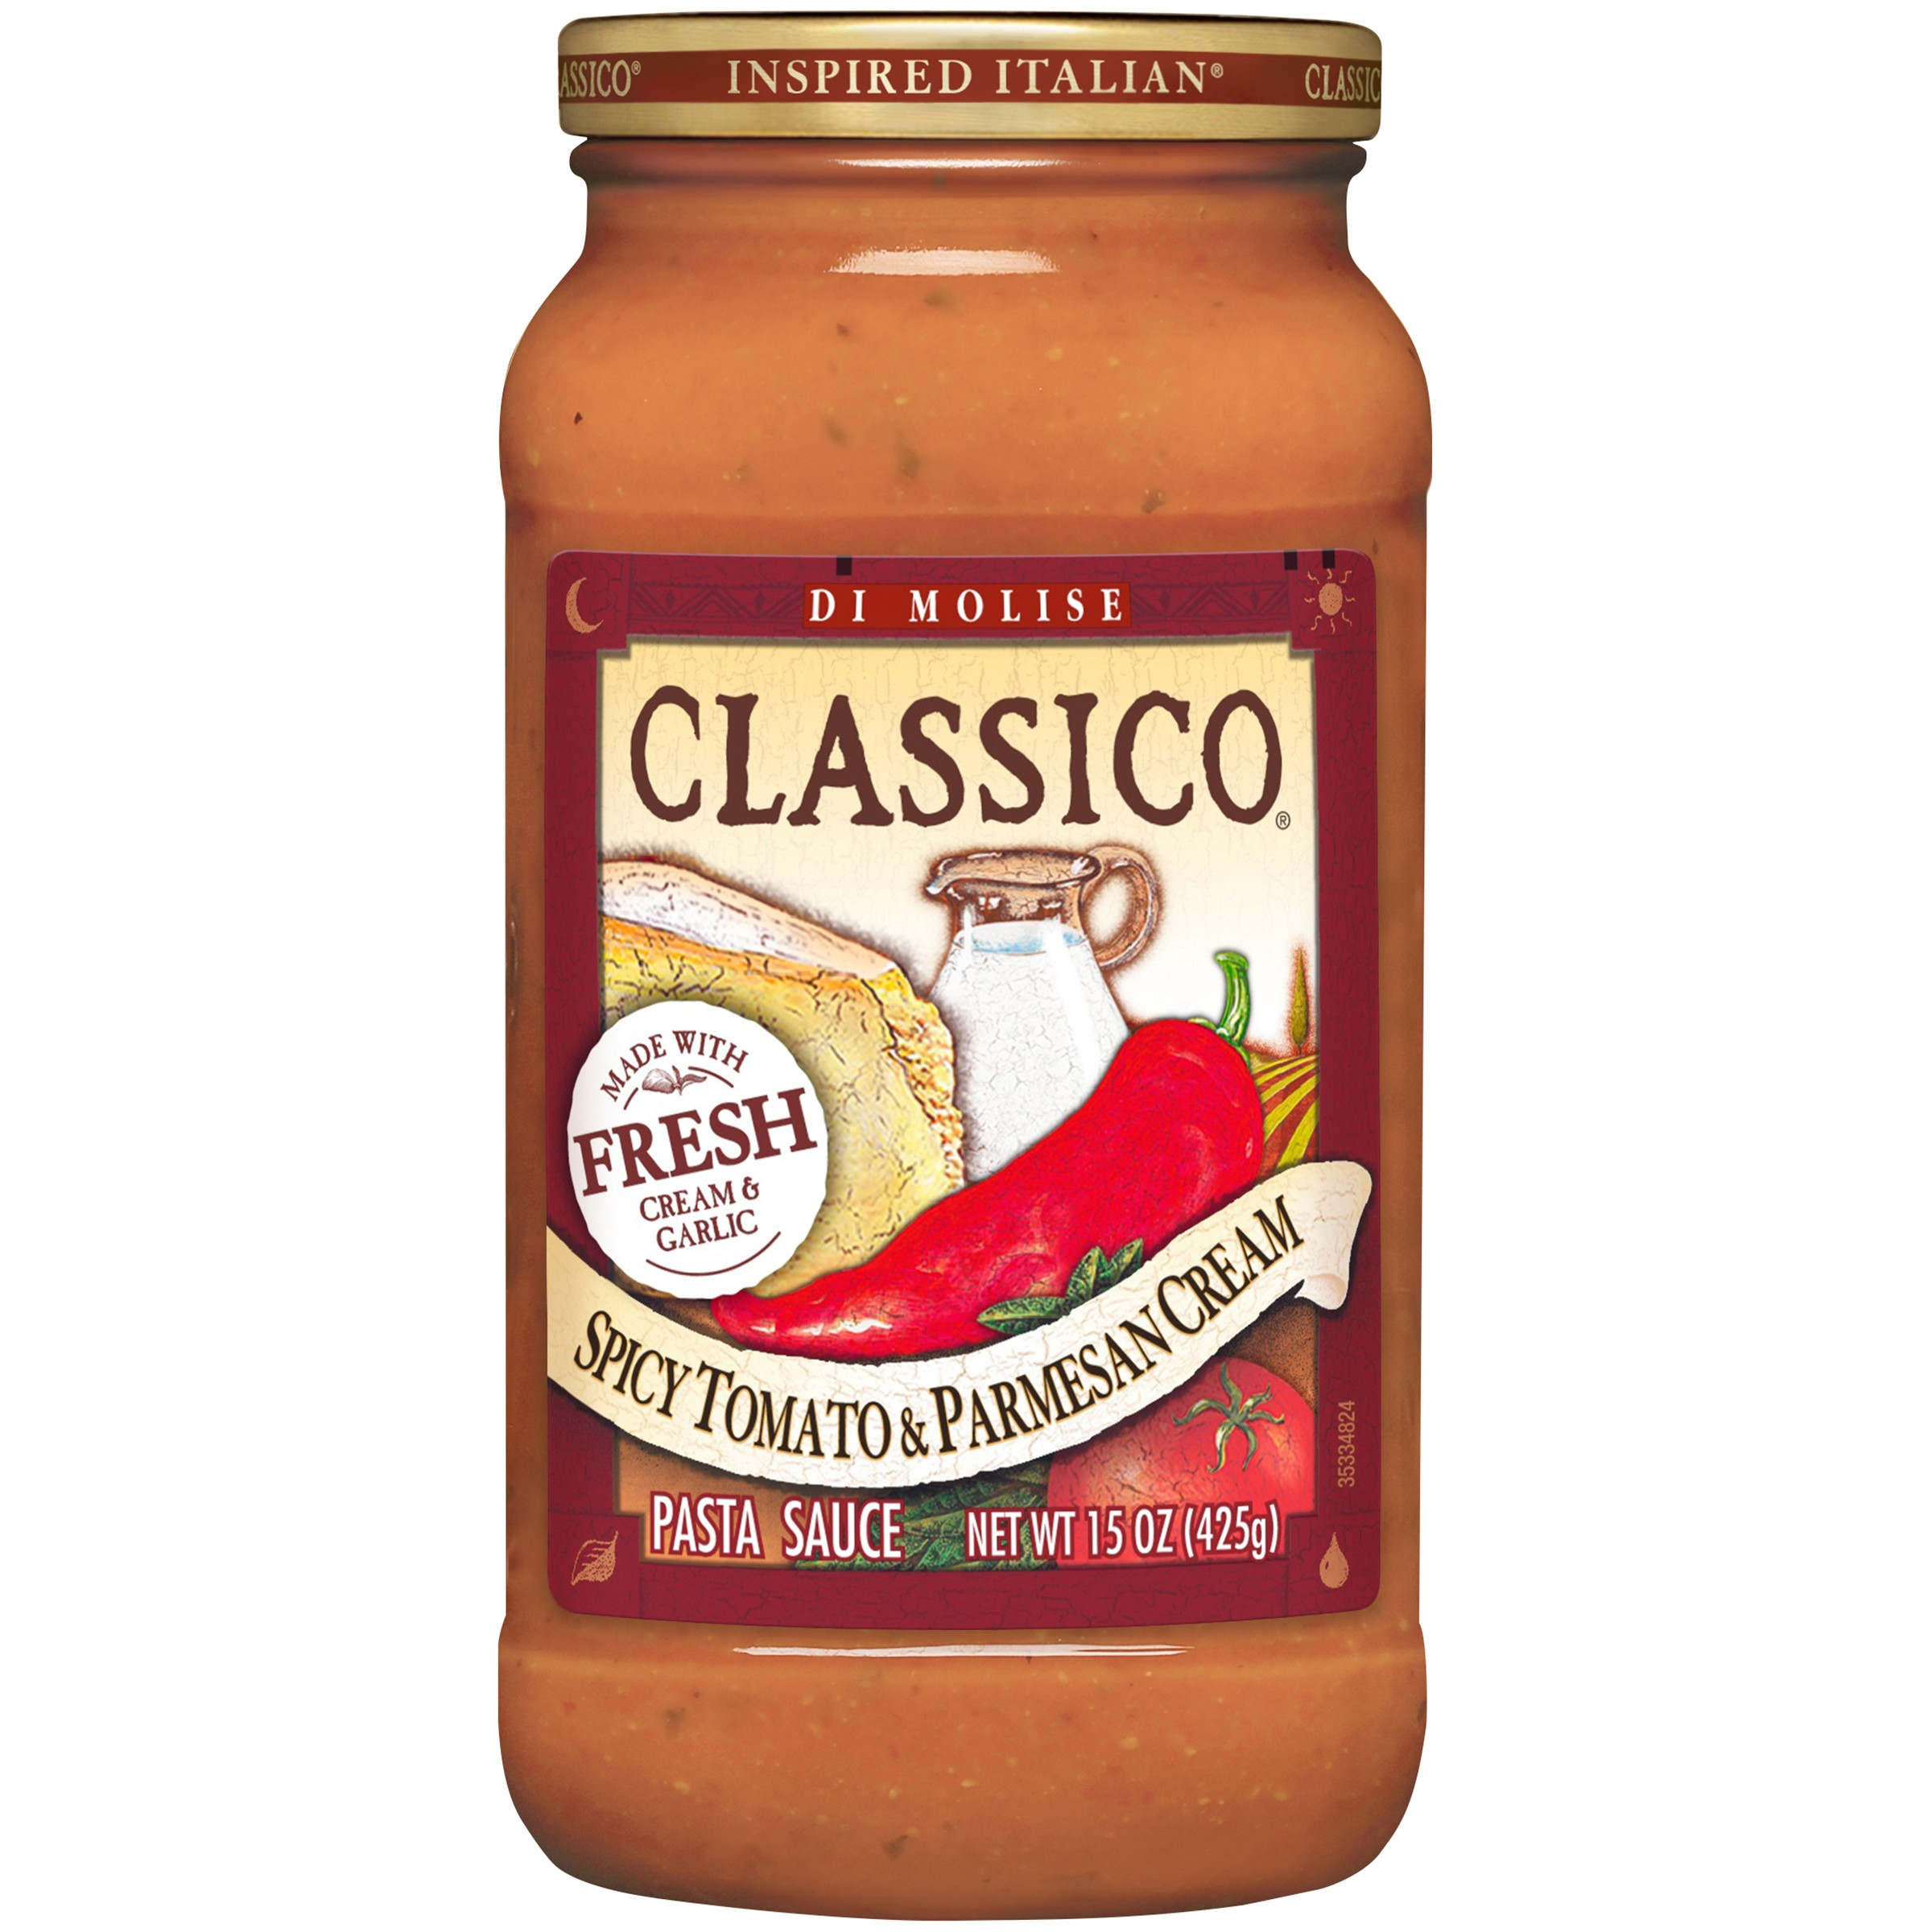 Classico Spaghetti Sauces
 Classico Spicy Tomato & Parmesan Cream Pasta Sauce 15 oz